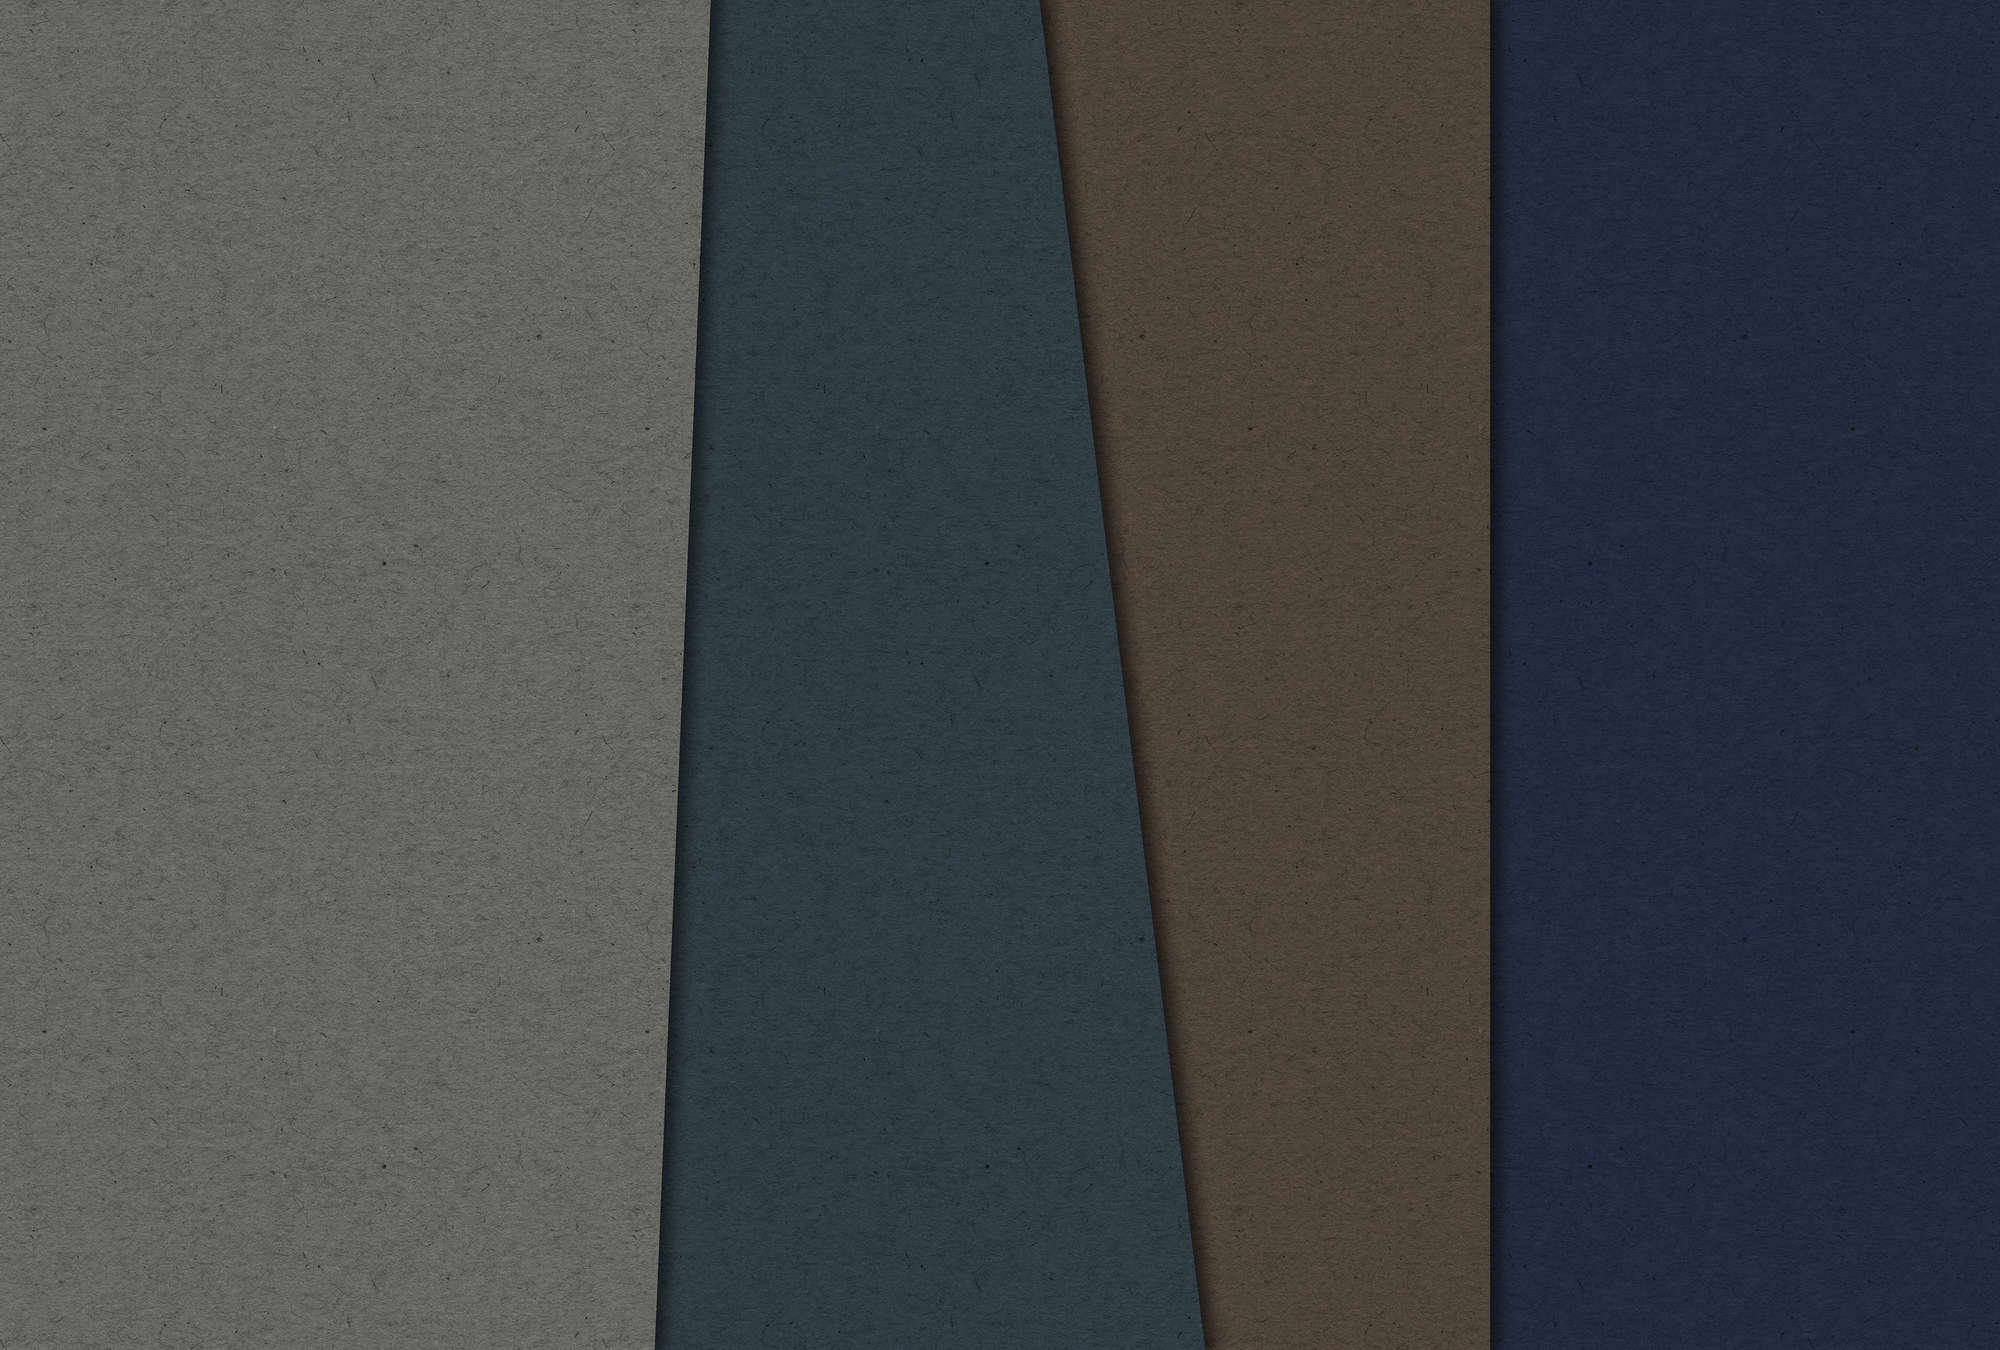             Layered Cardboard 2 - Papier peint structure carton avec champs de couleurs sombres - bleu, marron | intissé lisse nacré
        